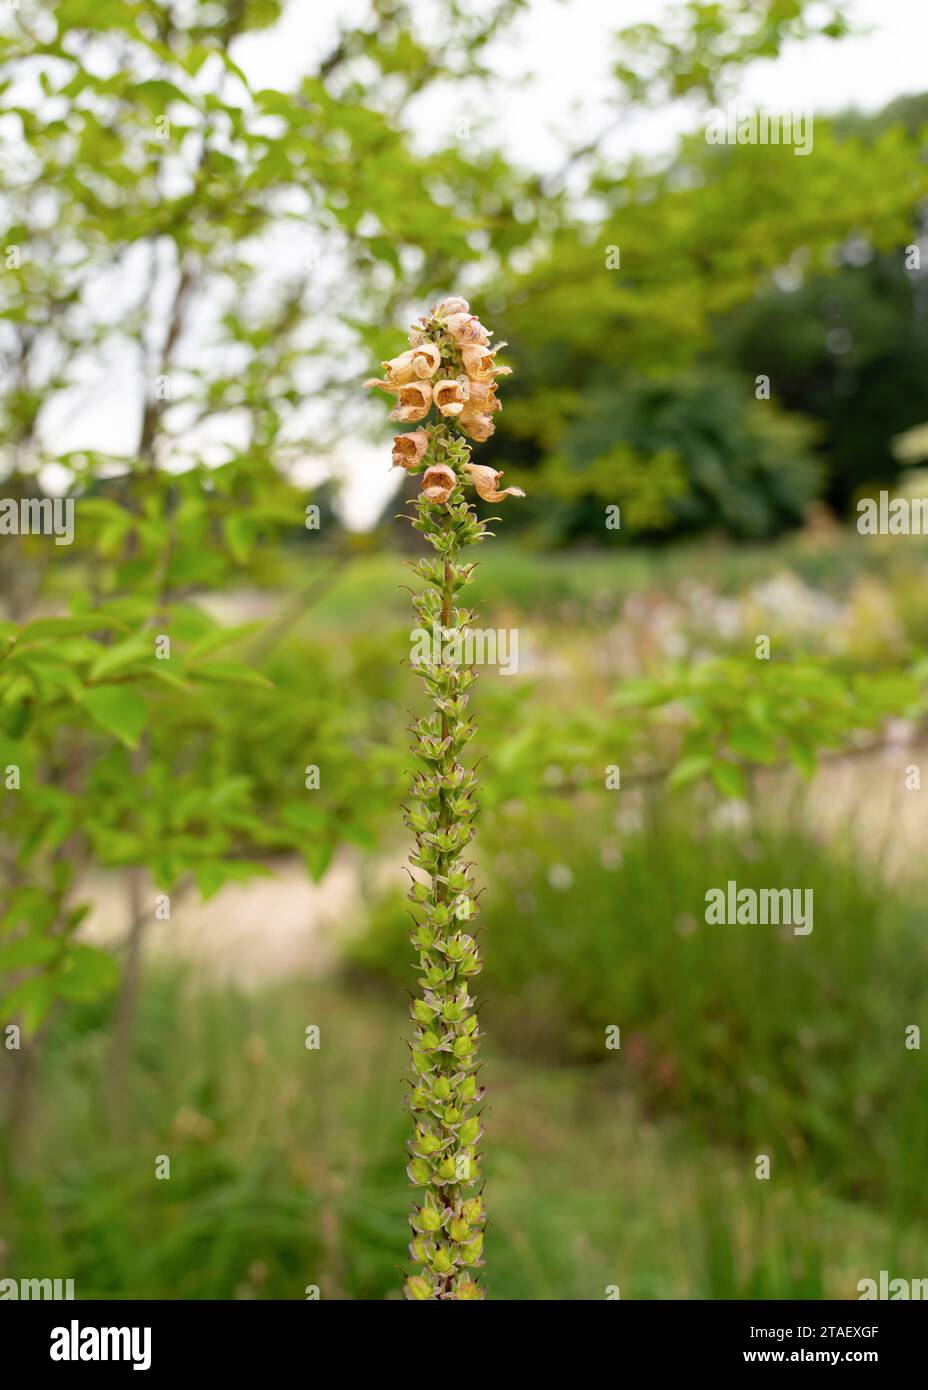 Dettaglio della digitalis ferruginea, il foxglove arrugginito, in fiore nei mesi estivi. Vista ravvicinata di Digitalis ferruginea. Foto Stock